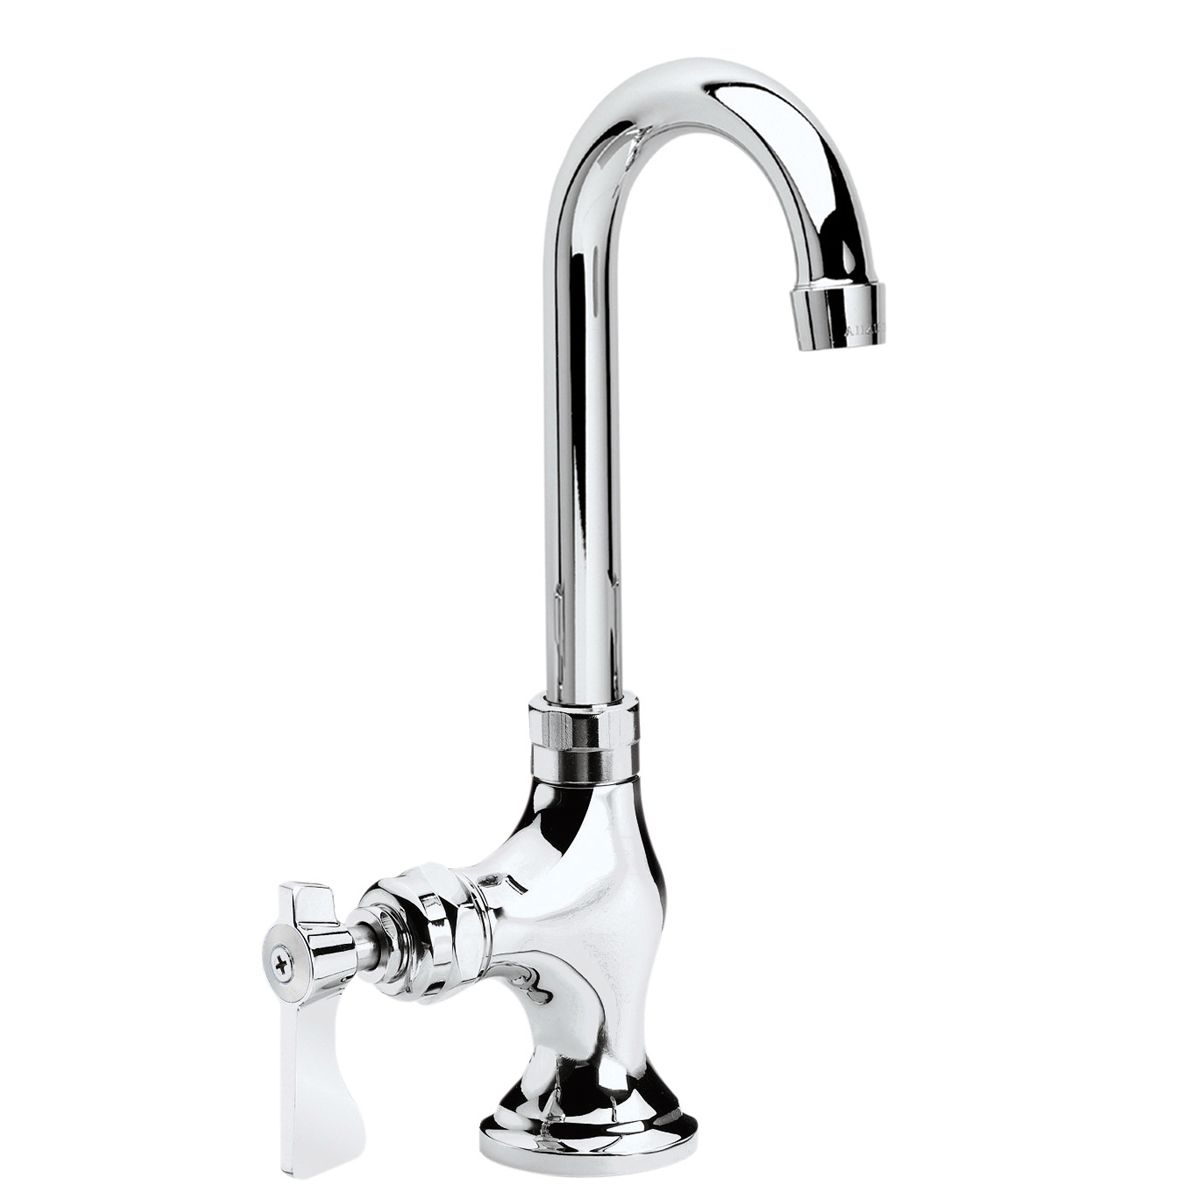 Krowne Metal 16-202L Royal Series Single Wall Mount Pantry Faucet with 3-1/2" Gooseneck Spout